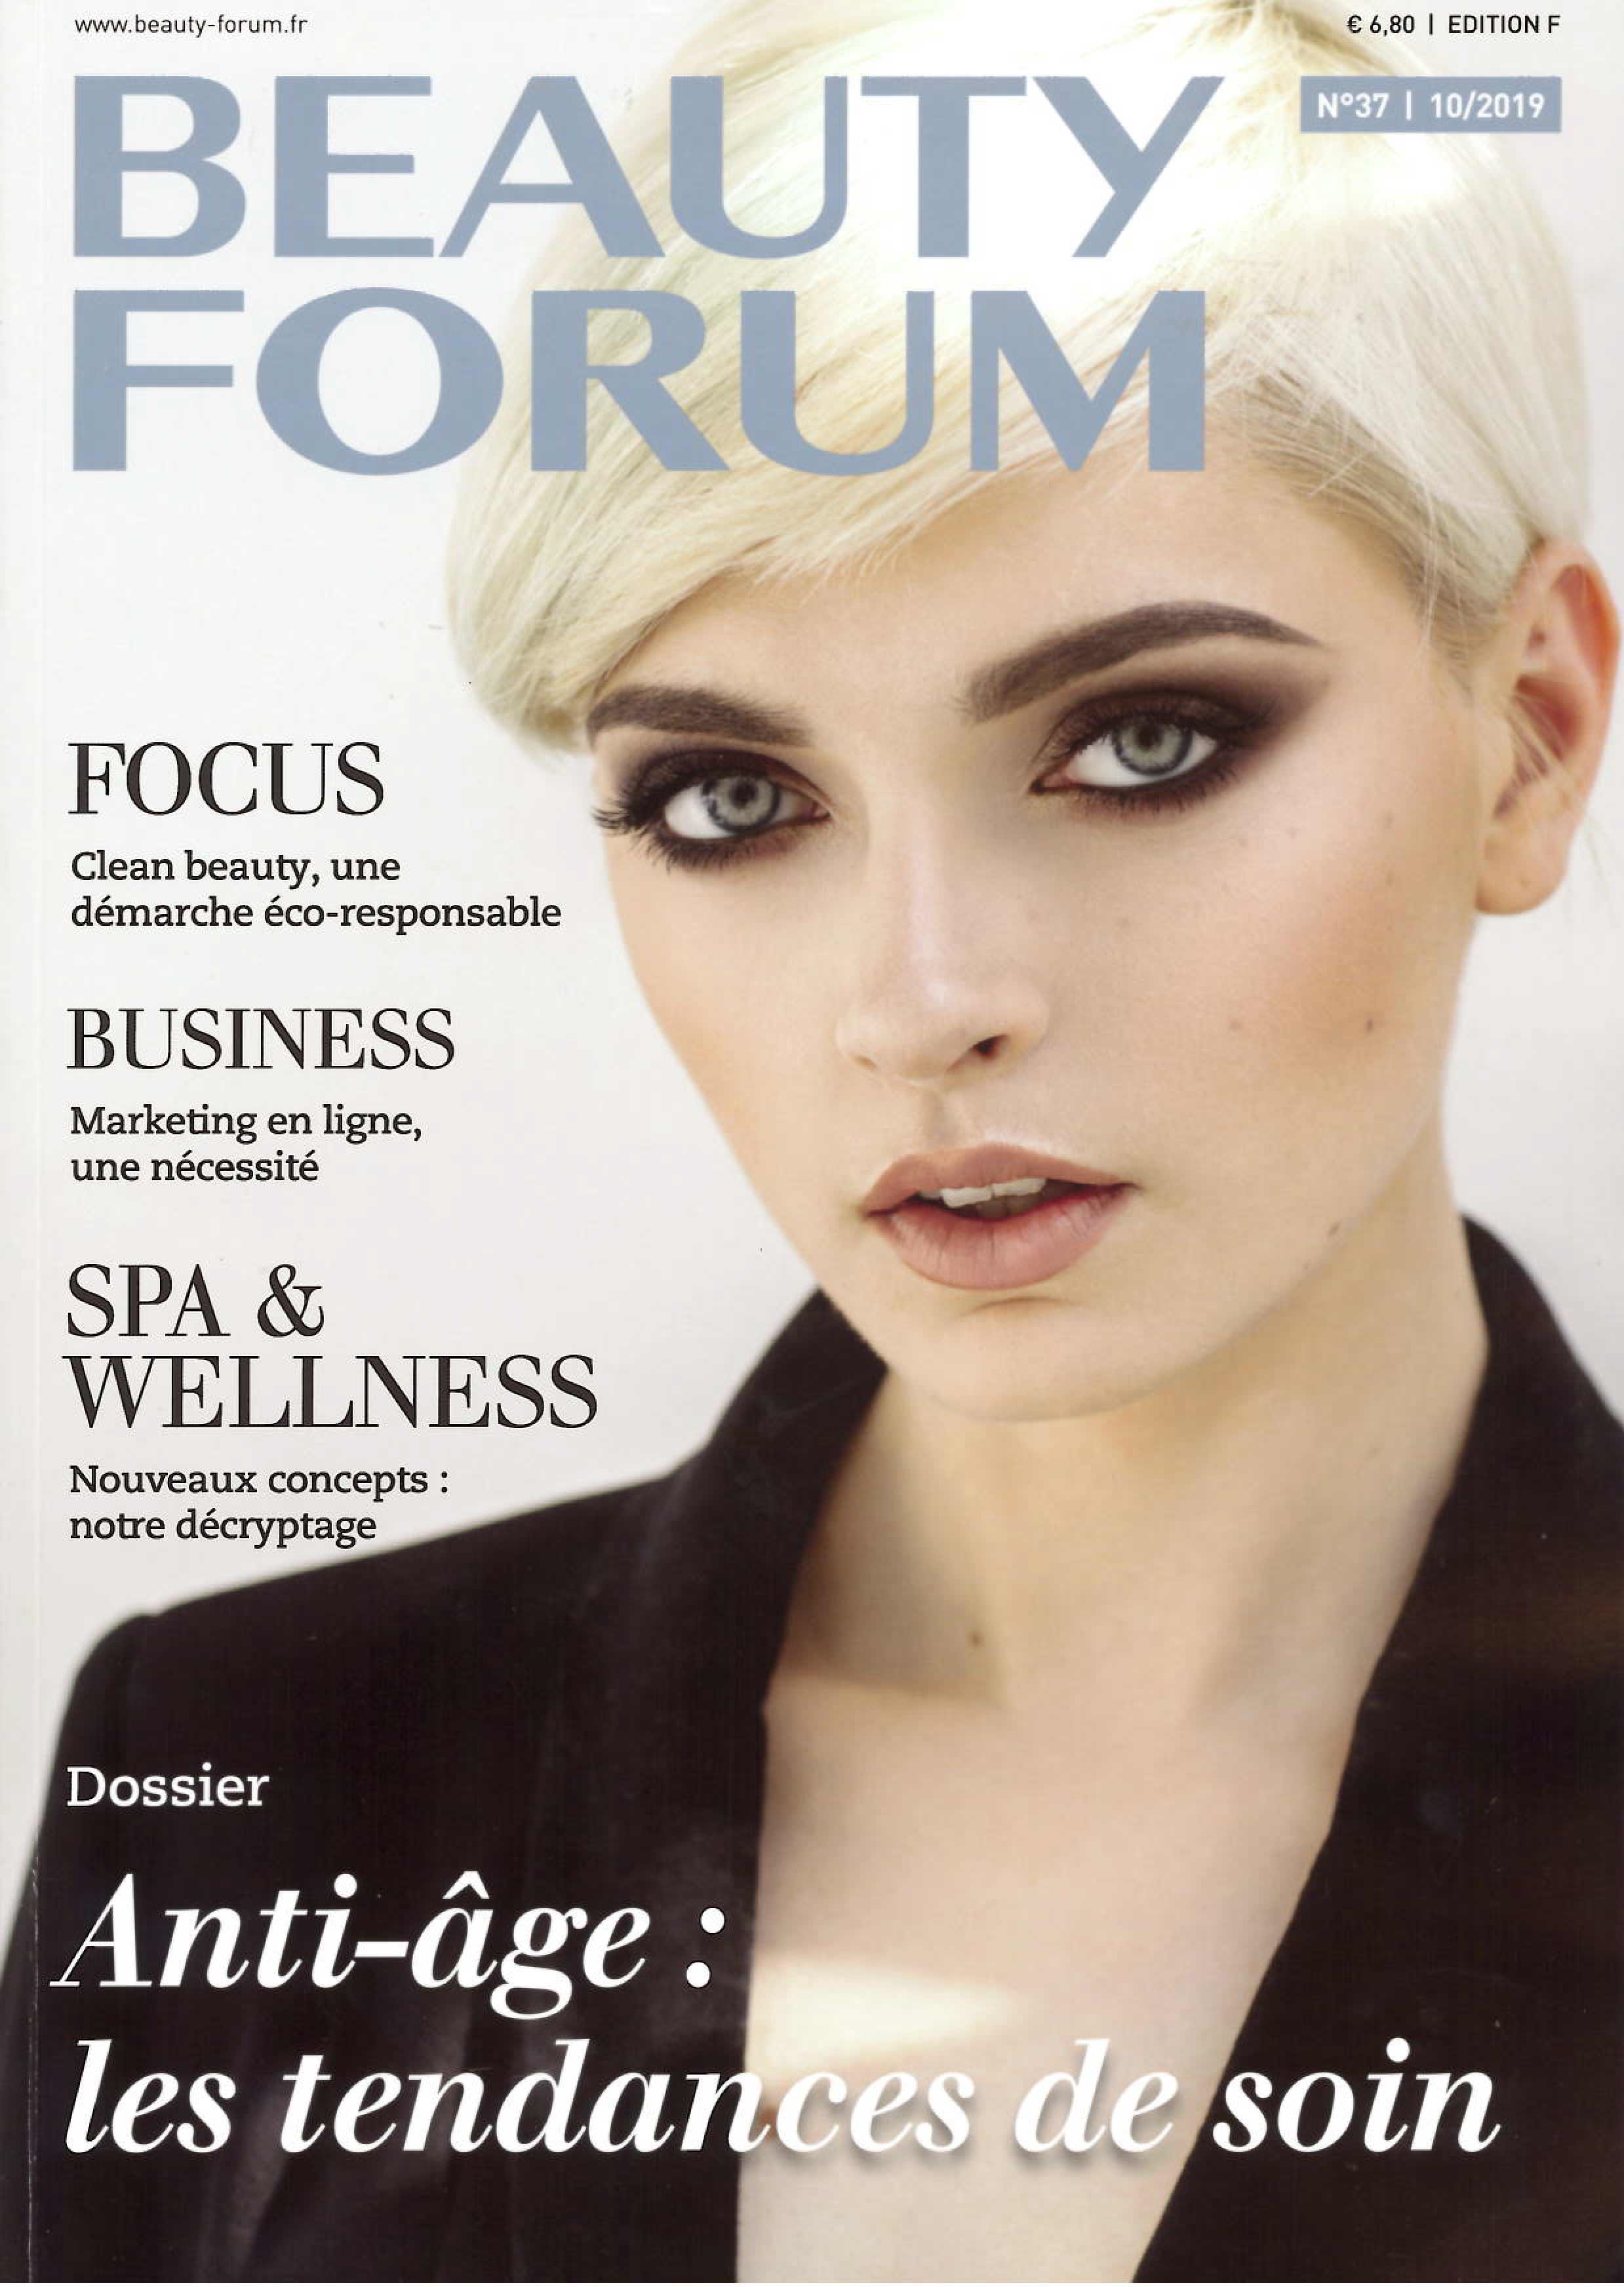 Beauty Forum - octobre 2019 - Aquablur de Revitalash® Cosmetics